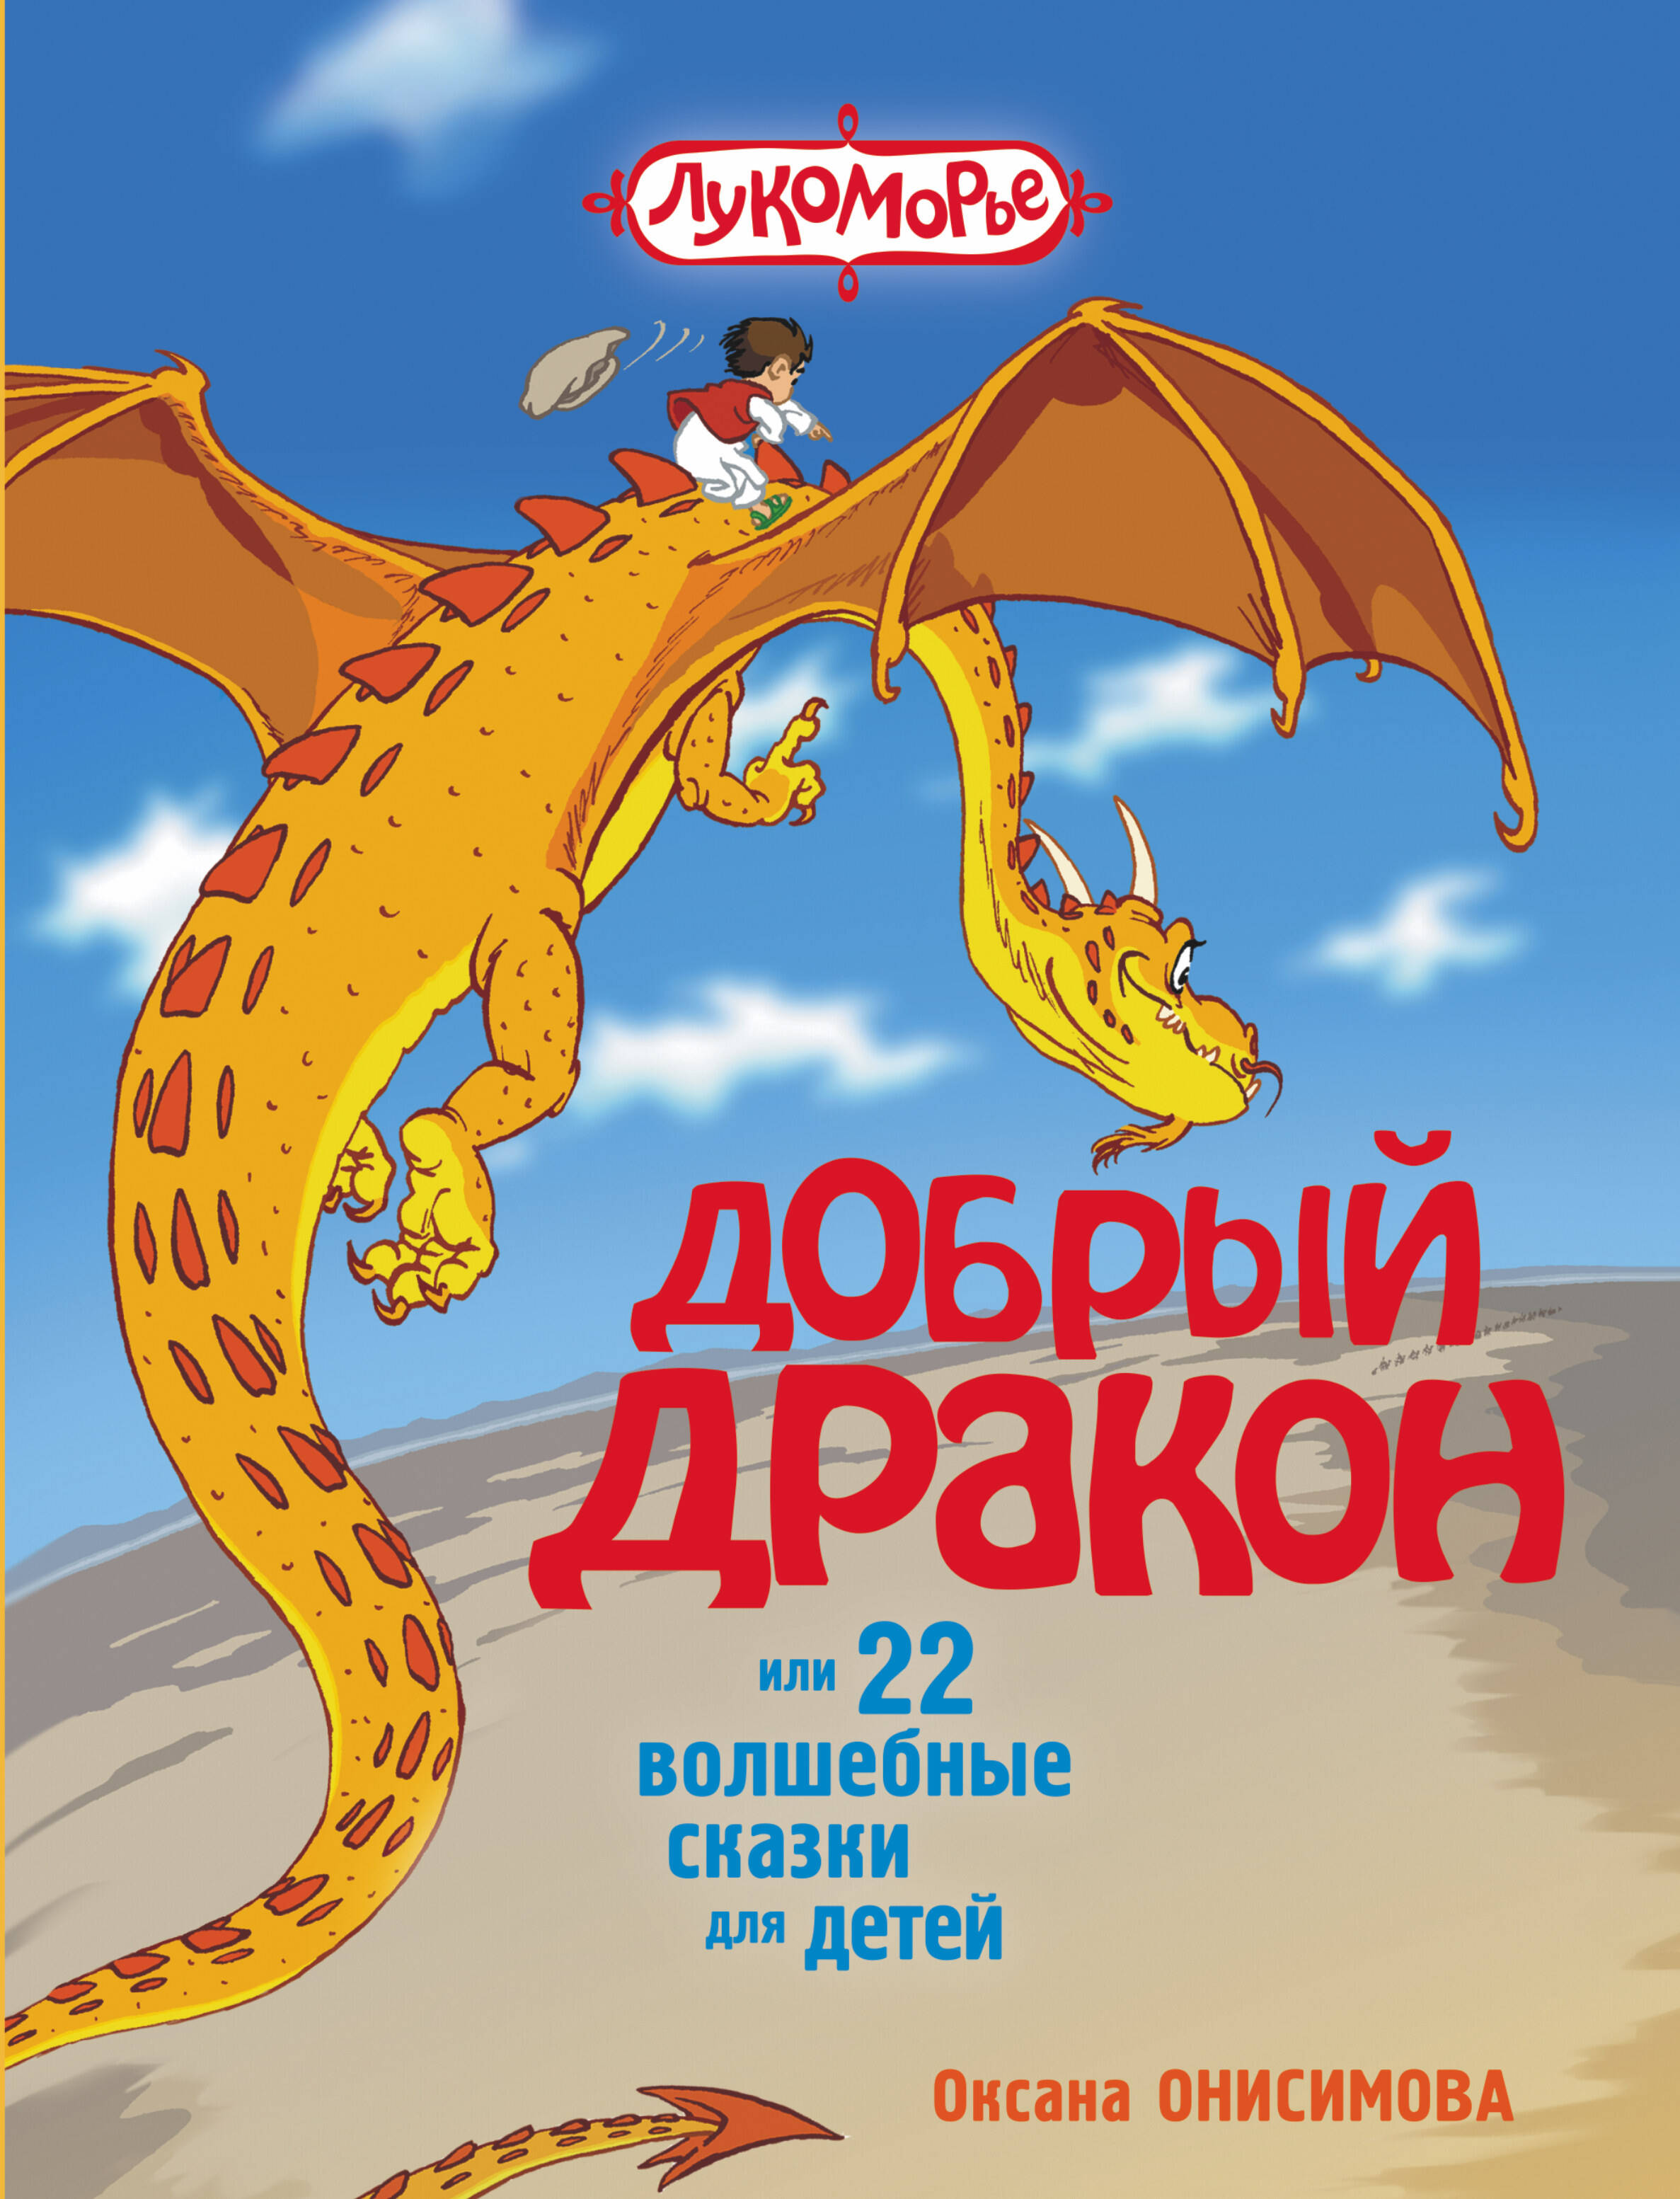 Онисимова Оксана  Добрый дракон, или 22 волшебные сказки для детей - страница 0